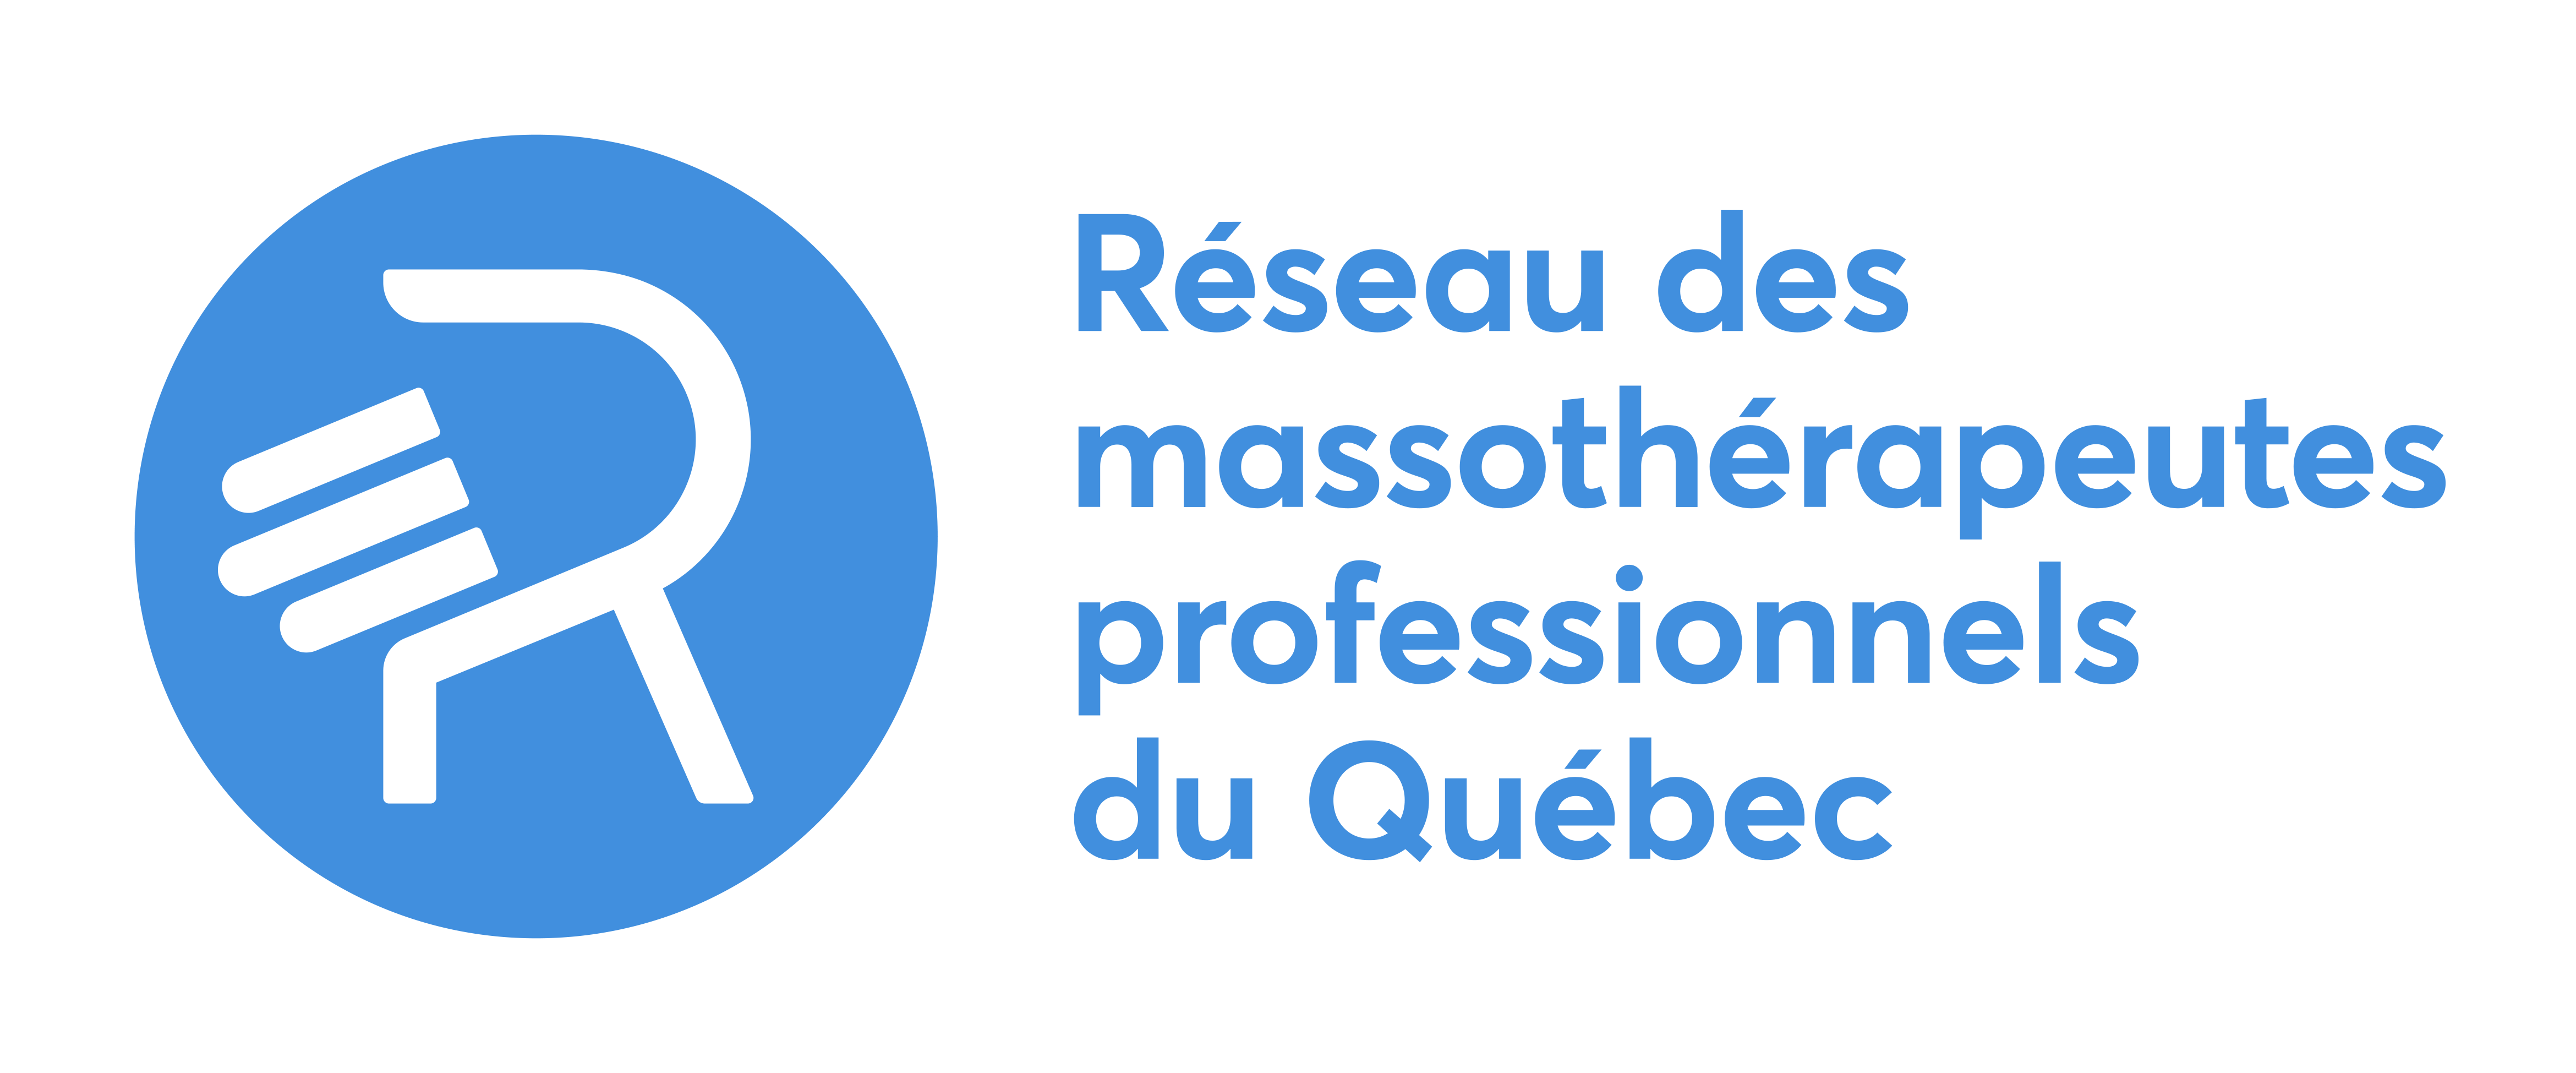 Le logo du Réseau des massothérapeutes professionnels du Québec